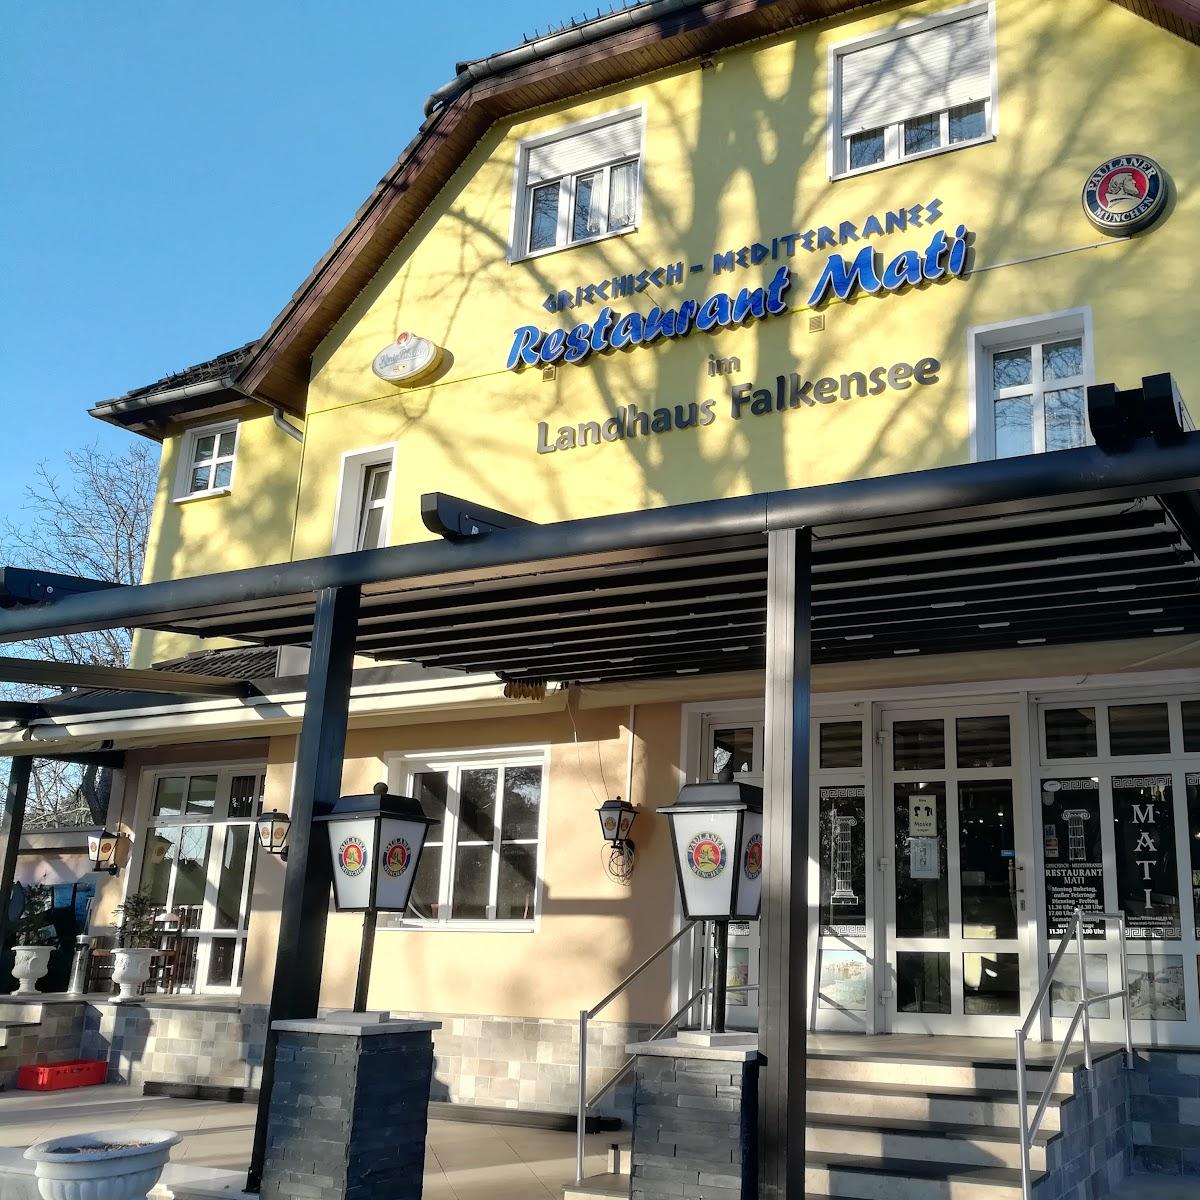 Restaurant "Landgasthaus" in Falkensee